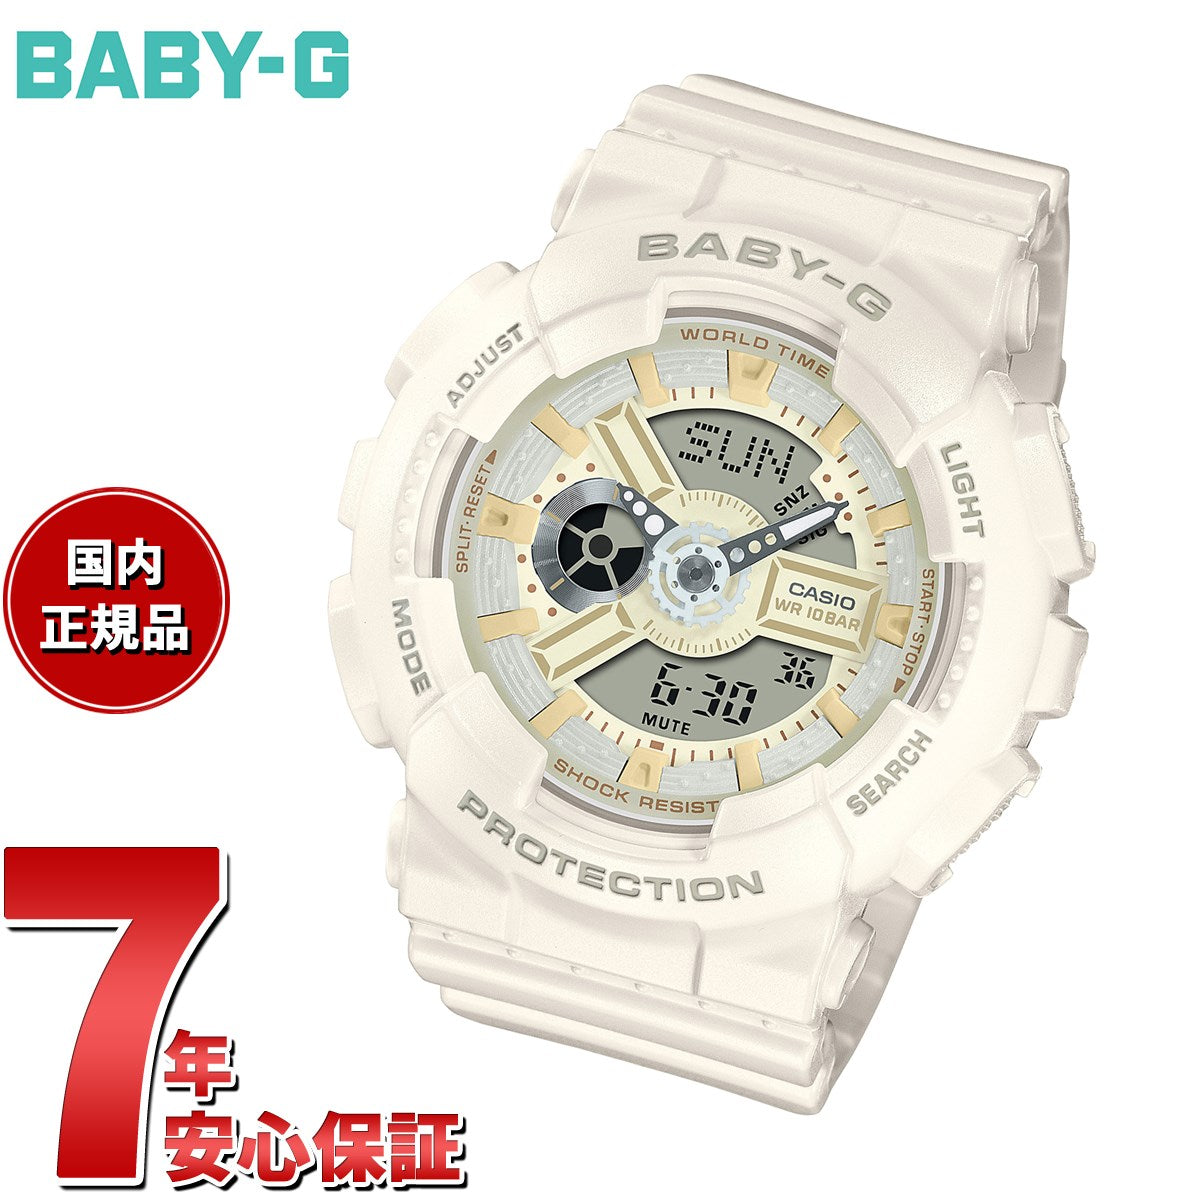 BABY-G カシオ ベビーG レディース 腕時計 BA-110XSW-7AJF ホワイトチョコレート オフホワイト